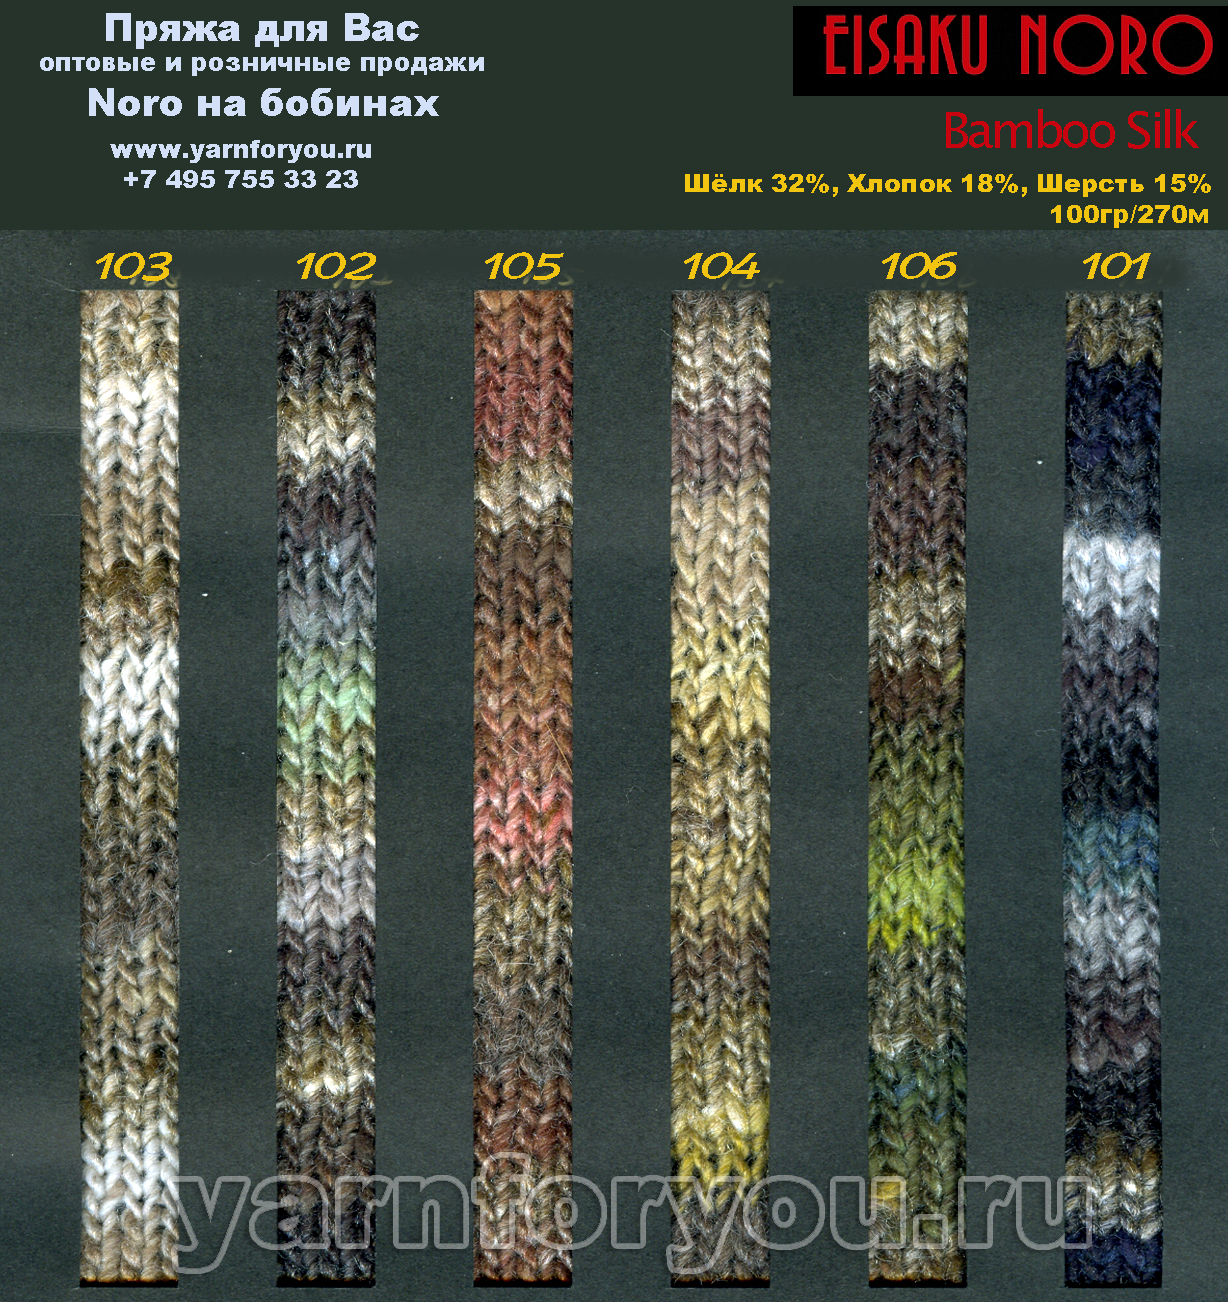 bamboo silk 2016-2017